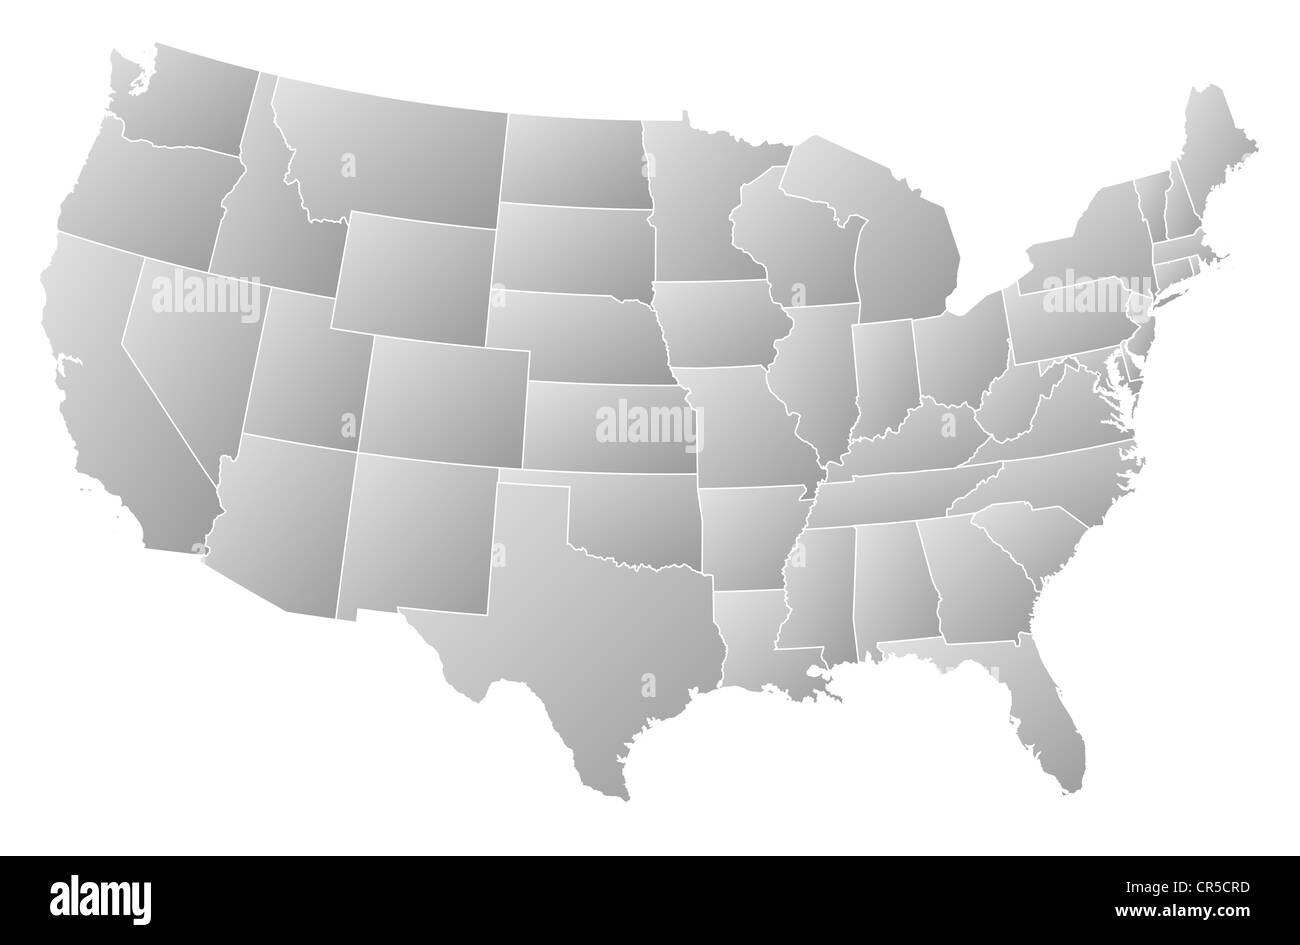 Mappa politica degli Stati Uniti con i vari Stati in cui Washington è evidenziata. Foto Stock